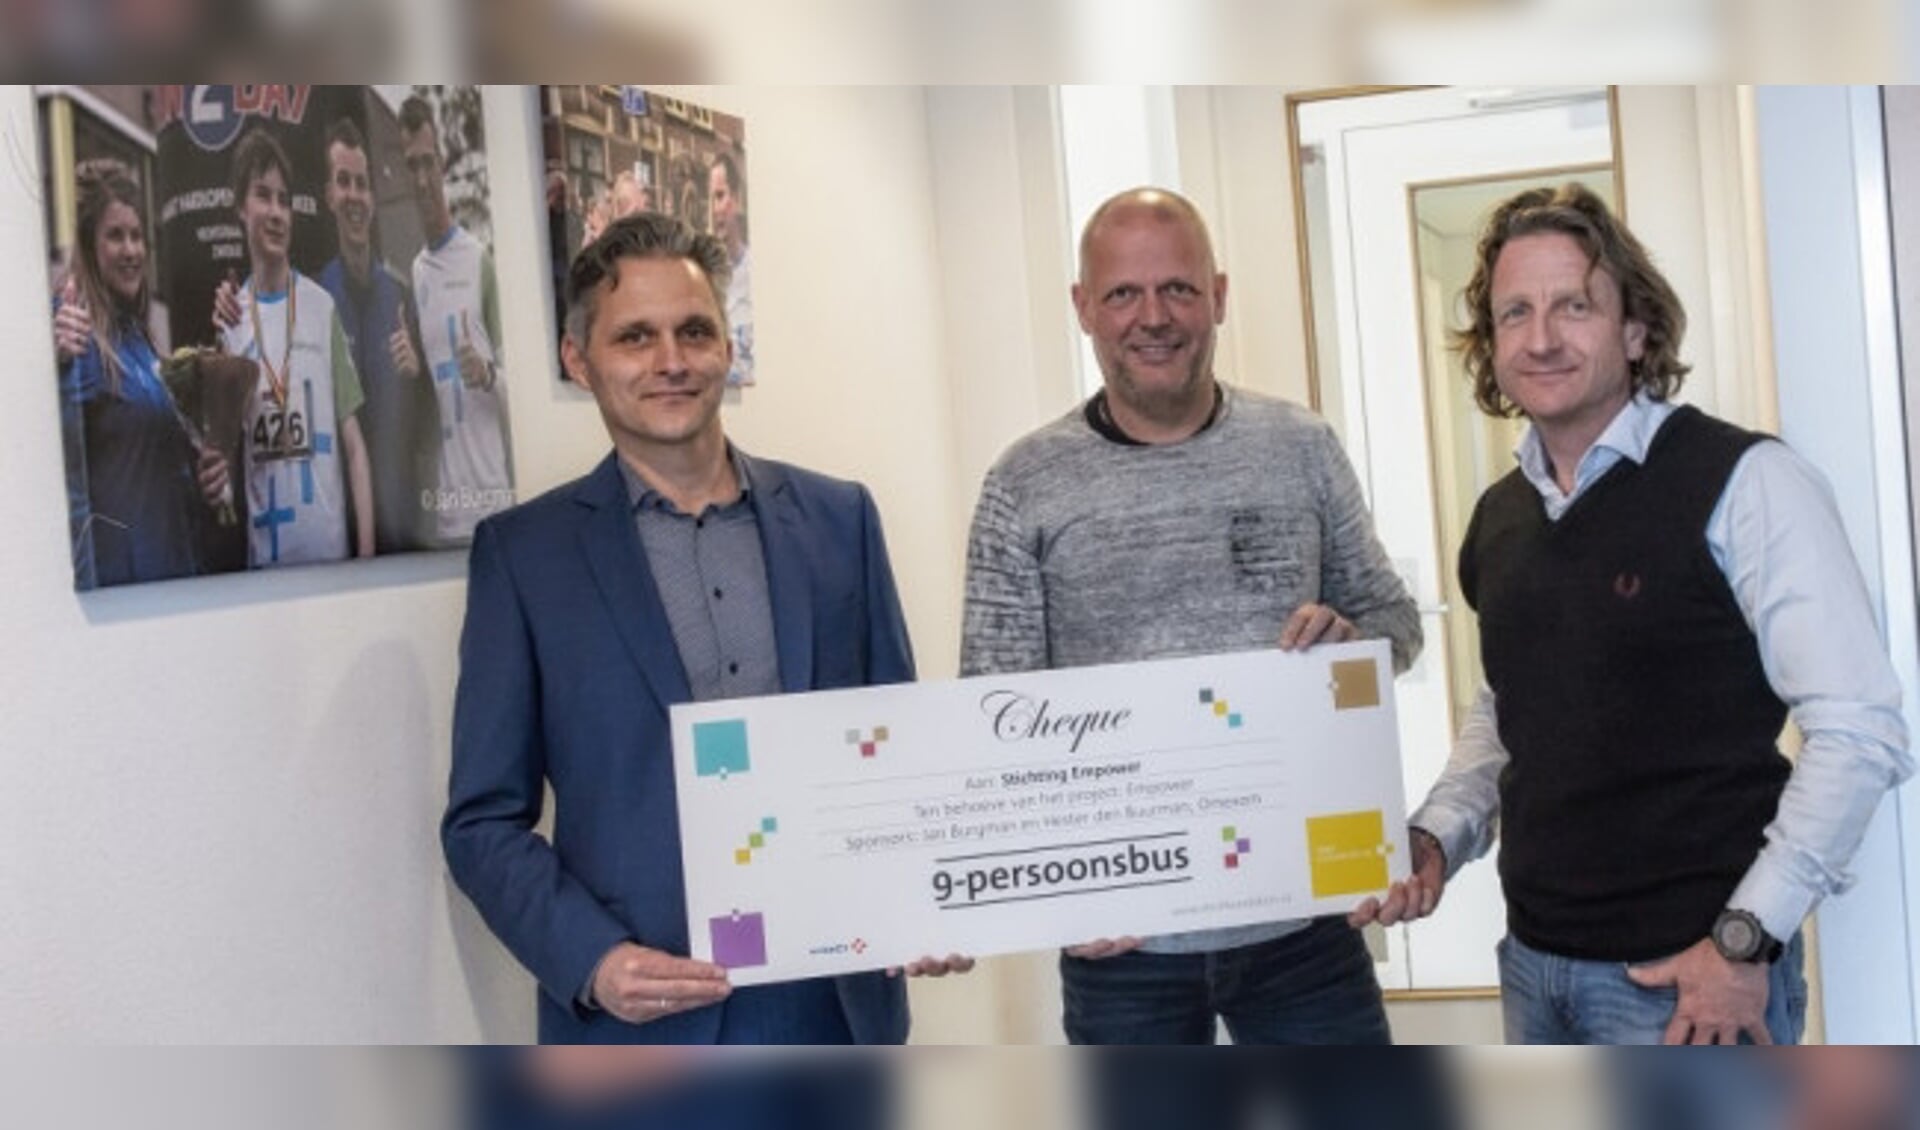 Eigen vervoersmiddel voor Empower in Zwolle met de support van de VINCI Foundation NL